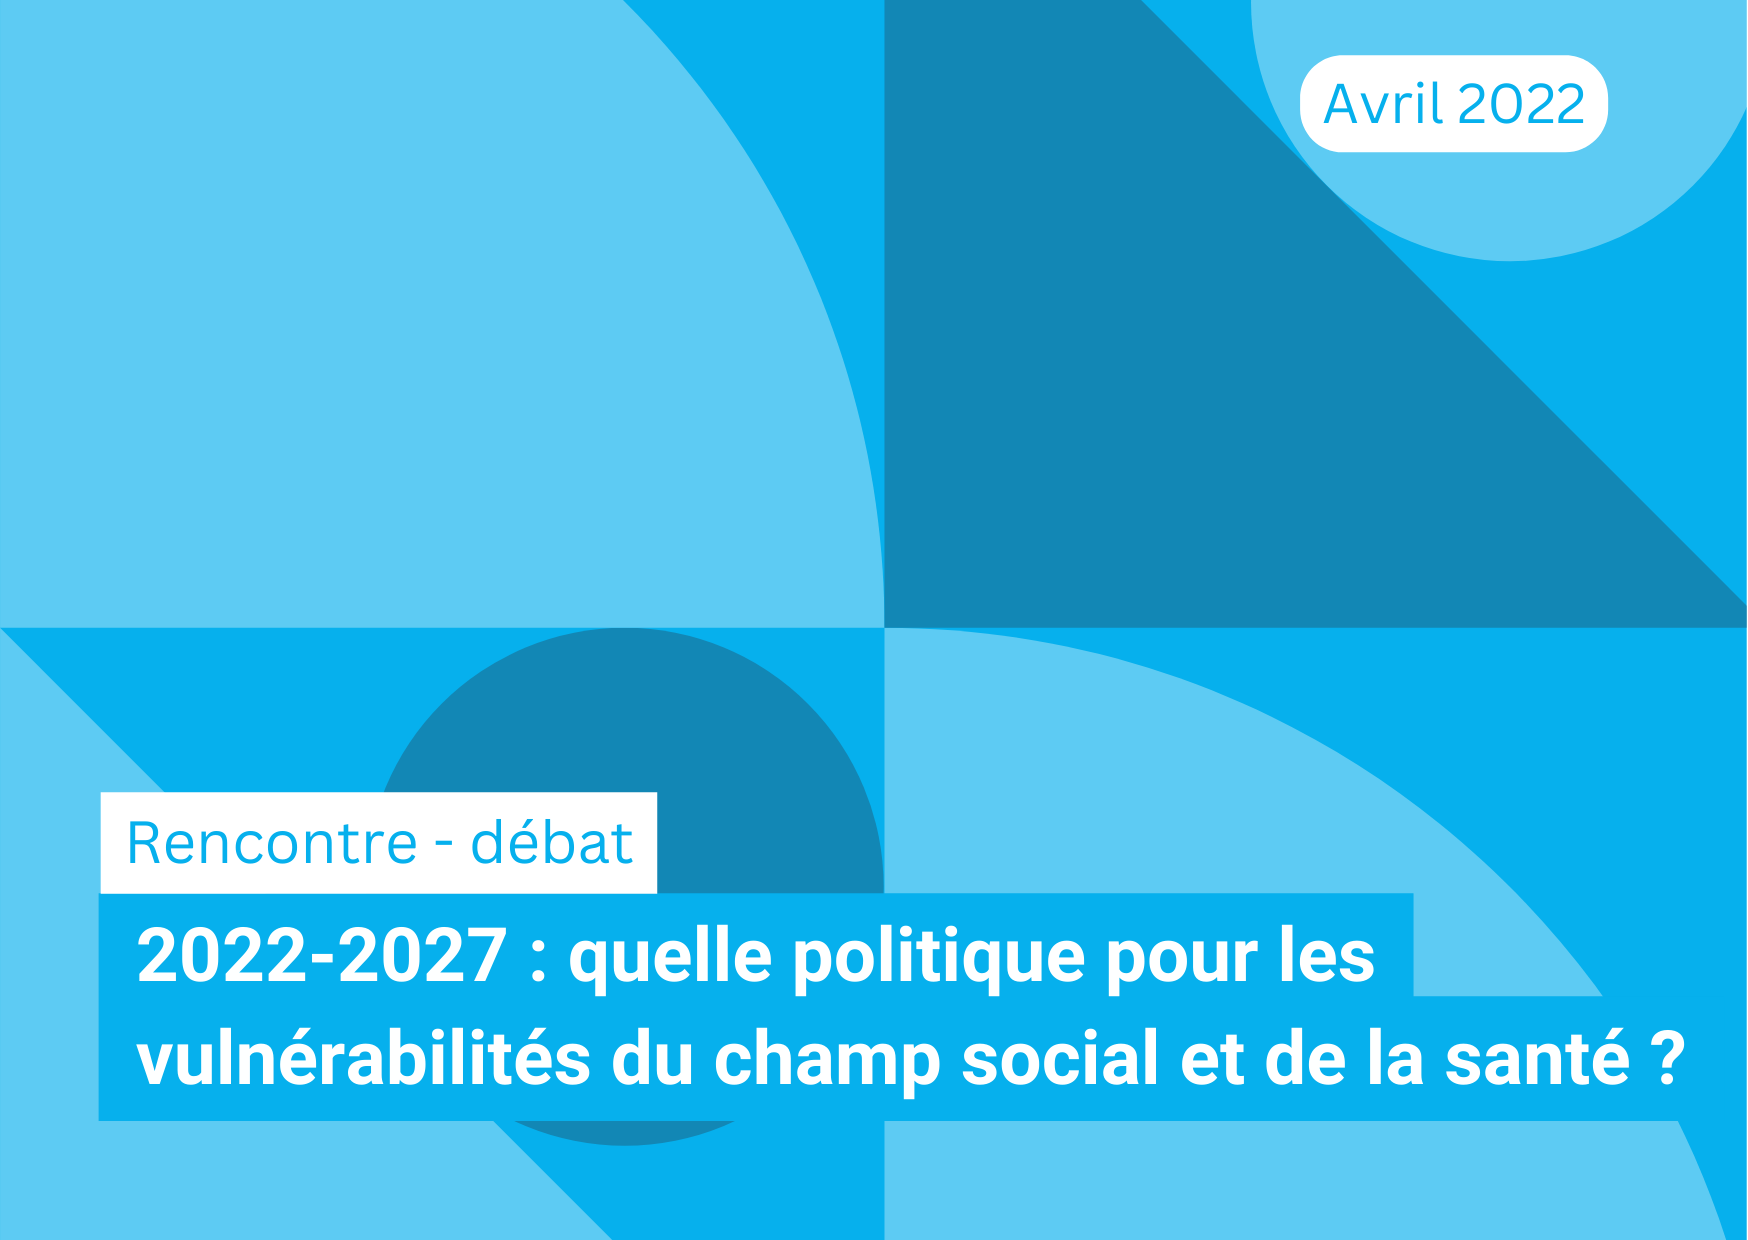 2022-2027 : quelle politique pour les vulnérabilités du champ social et de la santé ?